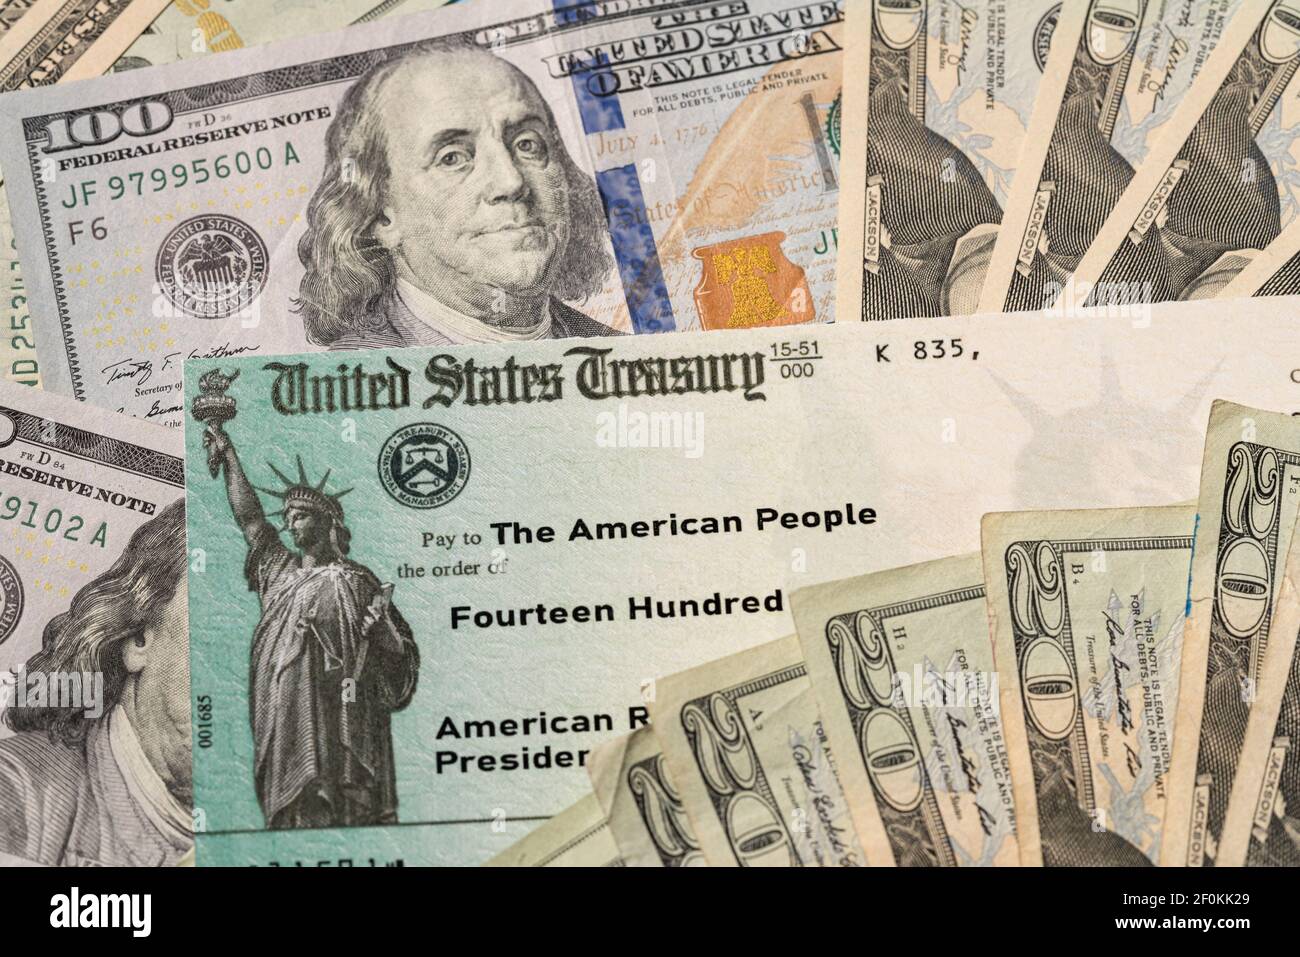 Stack di 20 dollari di bollette con assegno illustrativo del Tesoro degli Stati Uniti Per illustrare l'American Rescue Plan Act del 2021 pagamento a. fondo cash Foto Stock